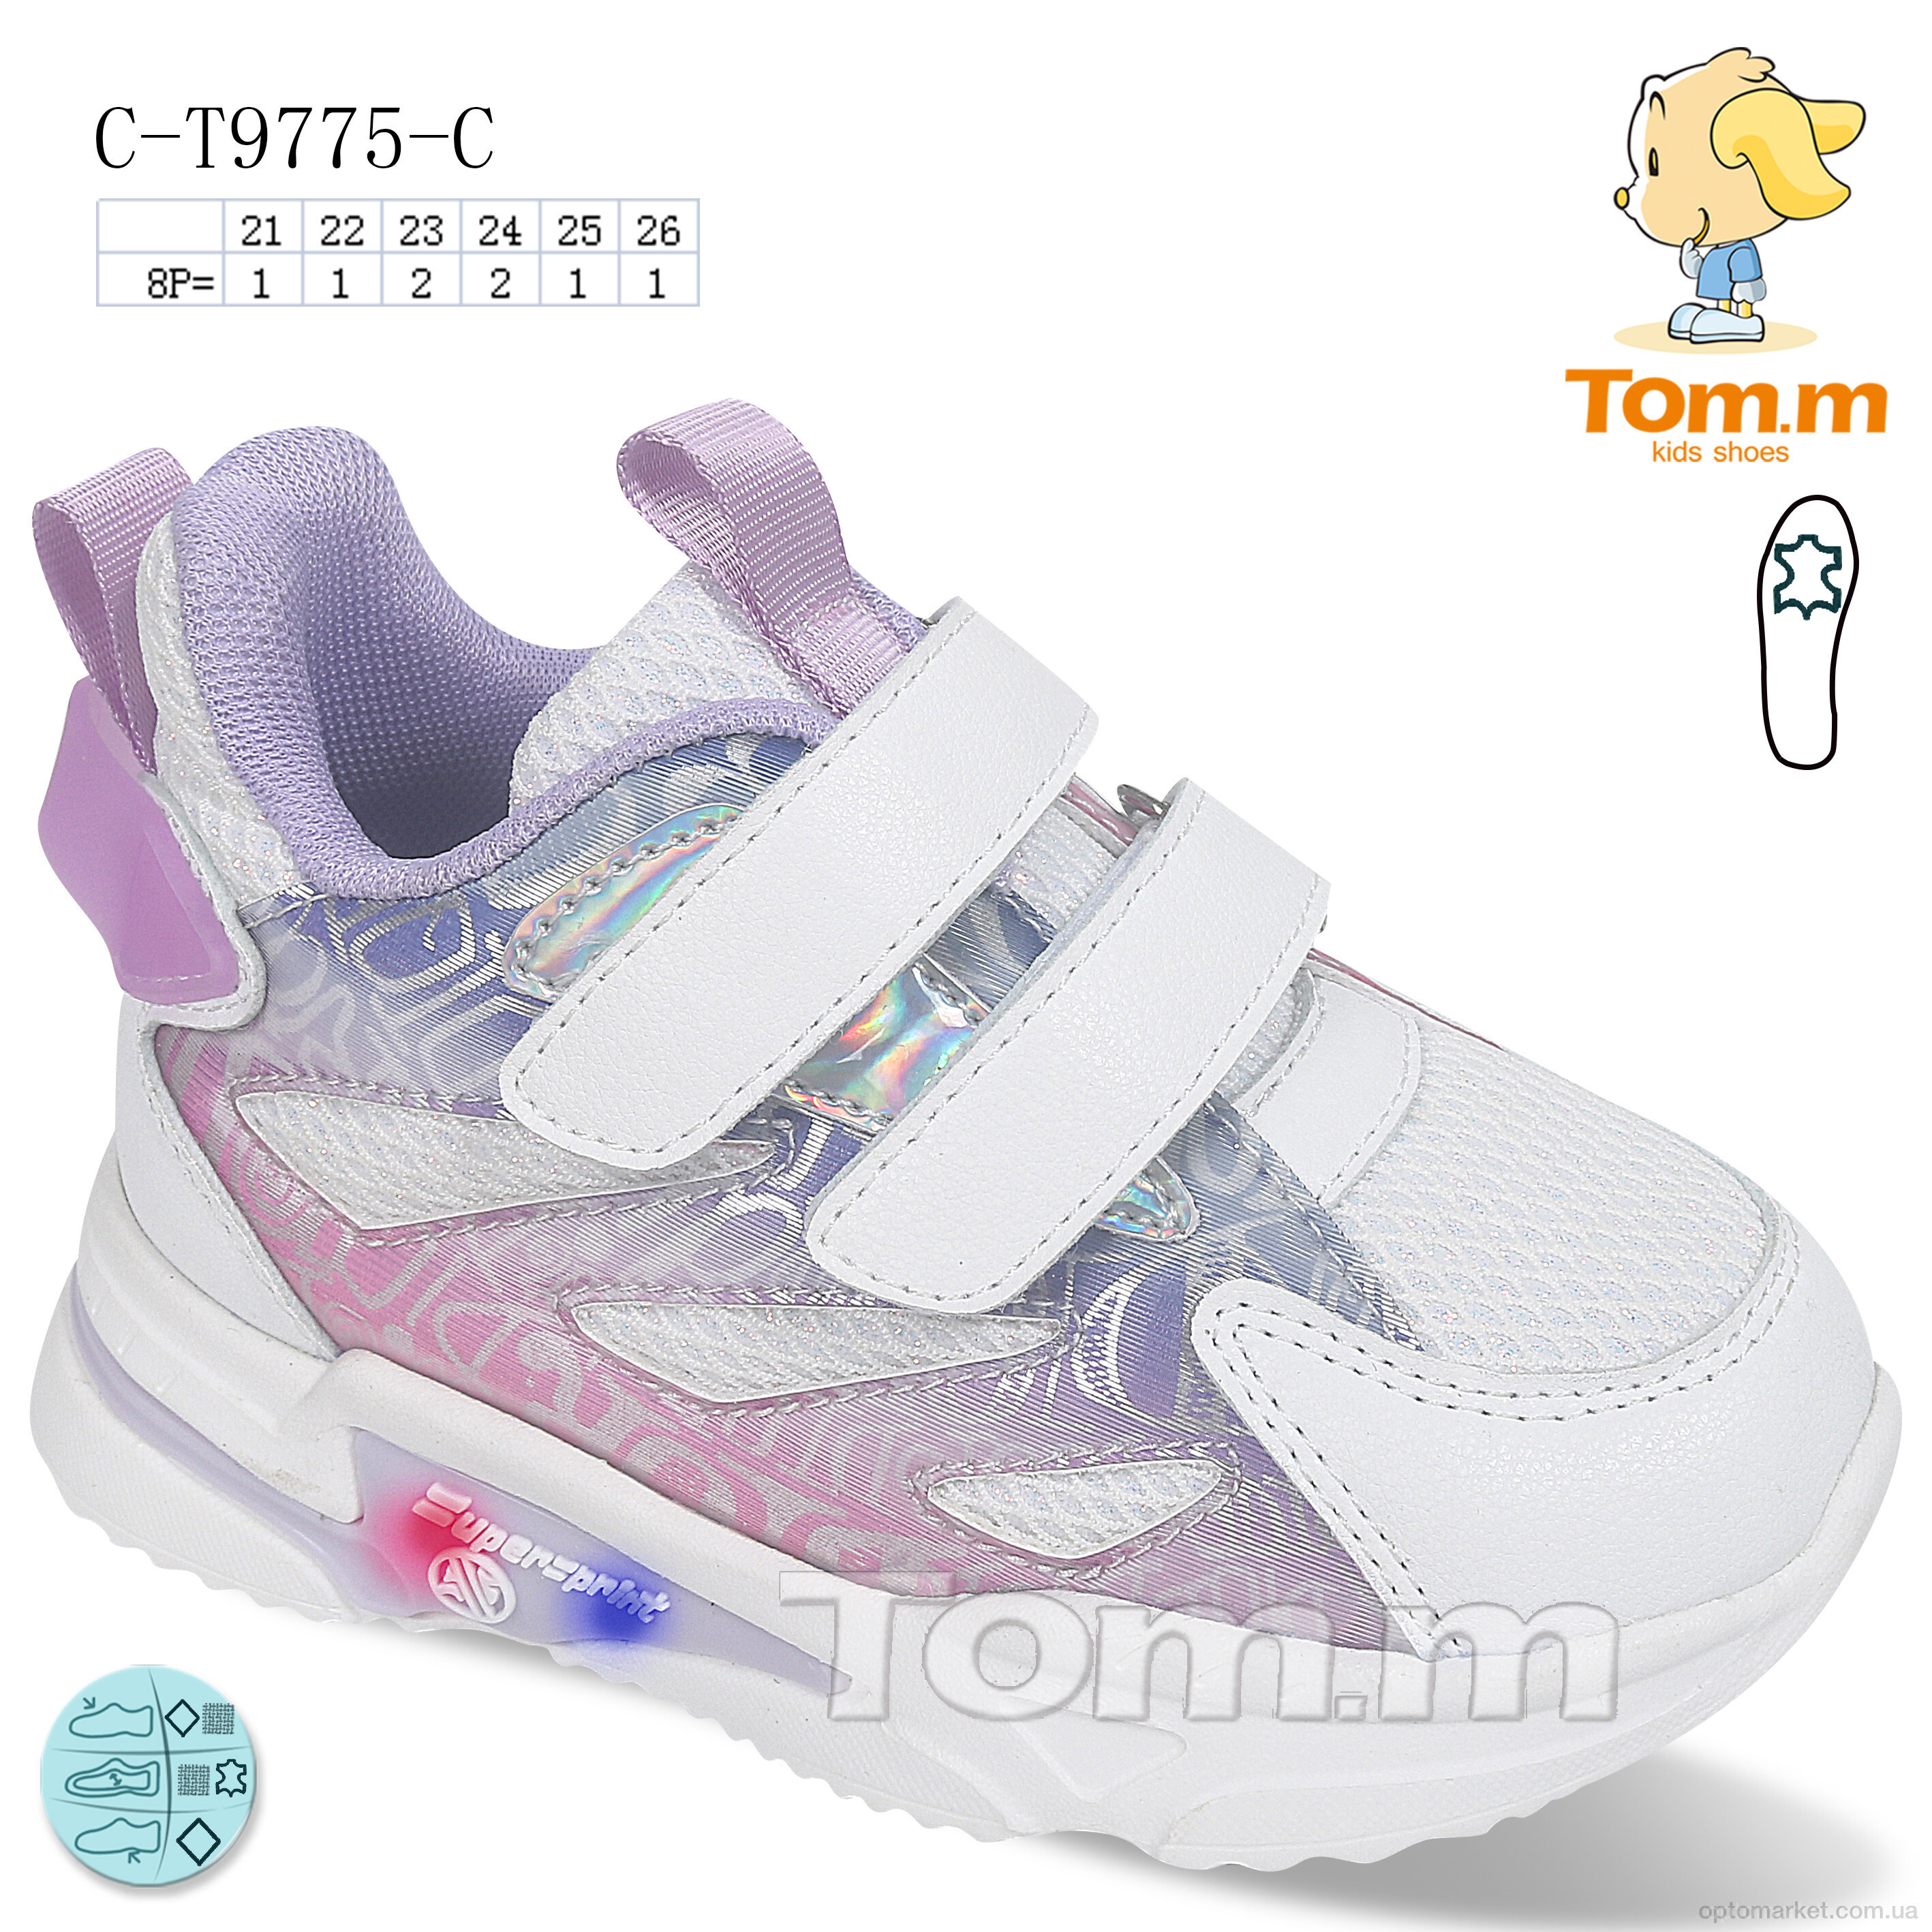 Купить Кросівки дитячі C-T9775-C LED TOM.M білий, фото 1